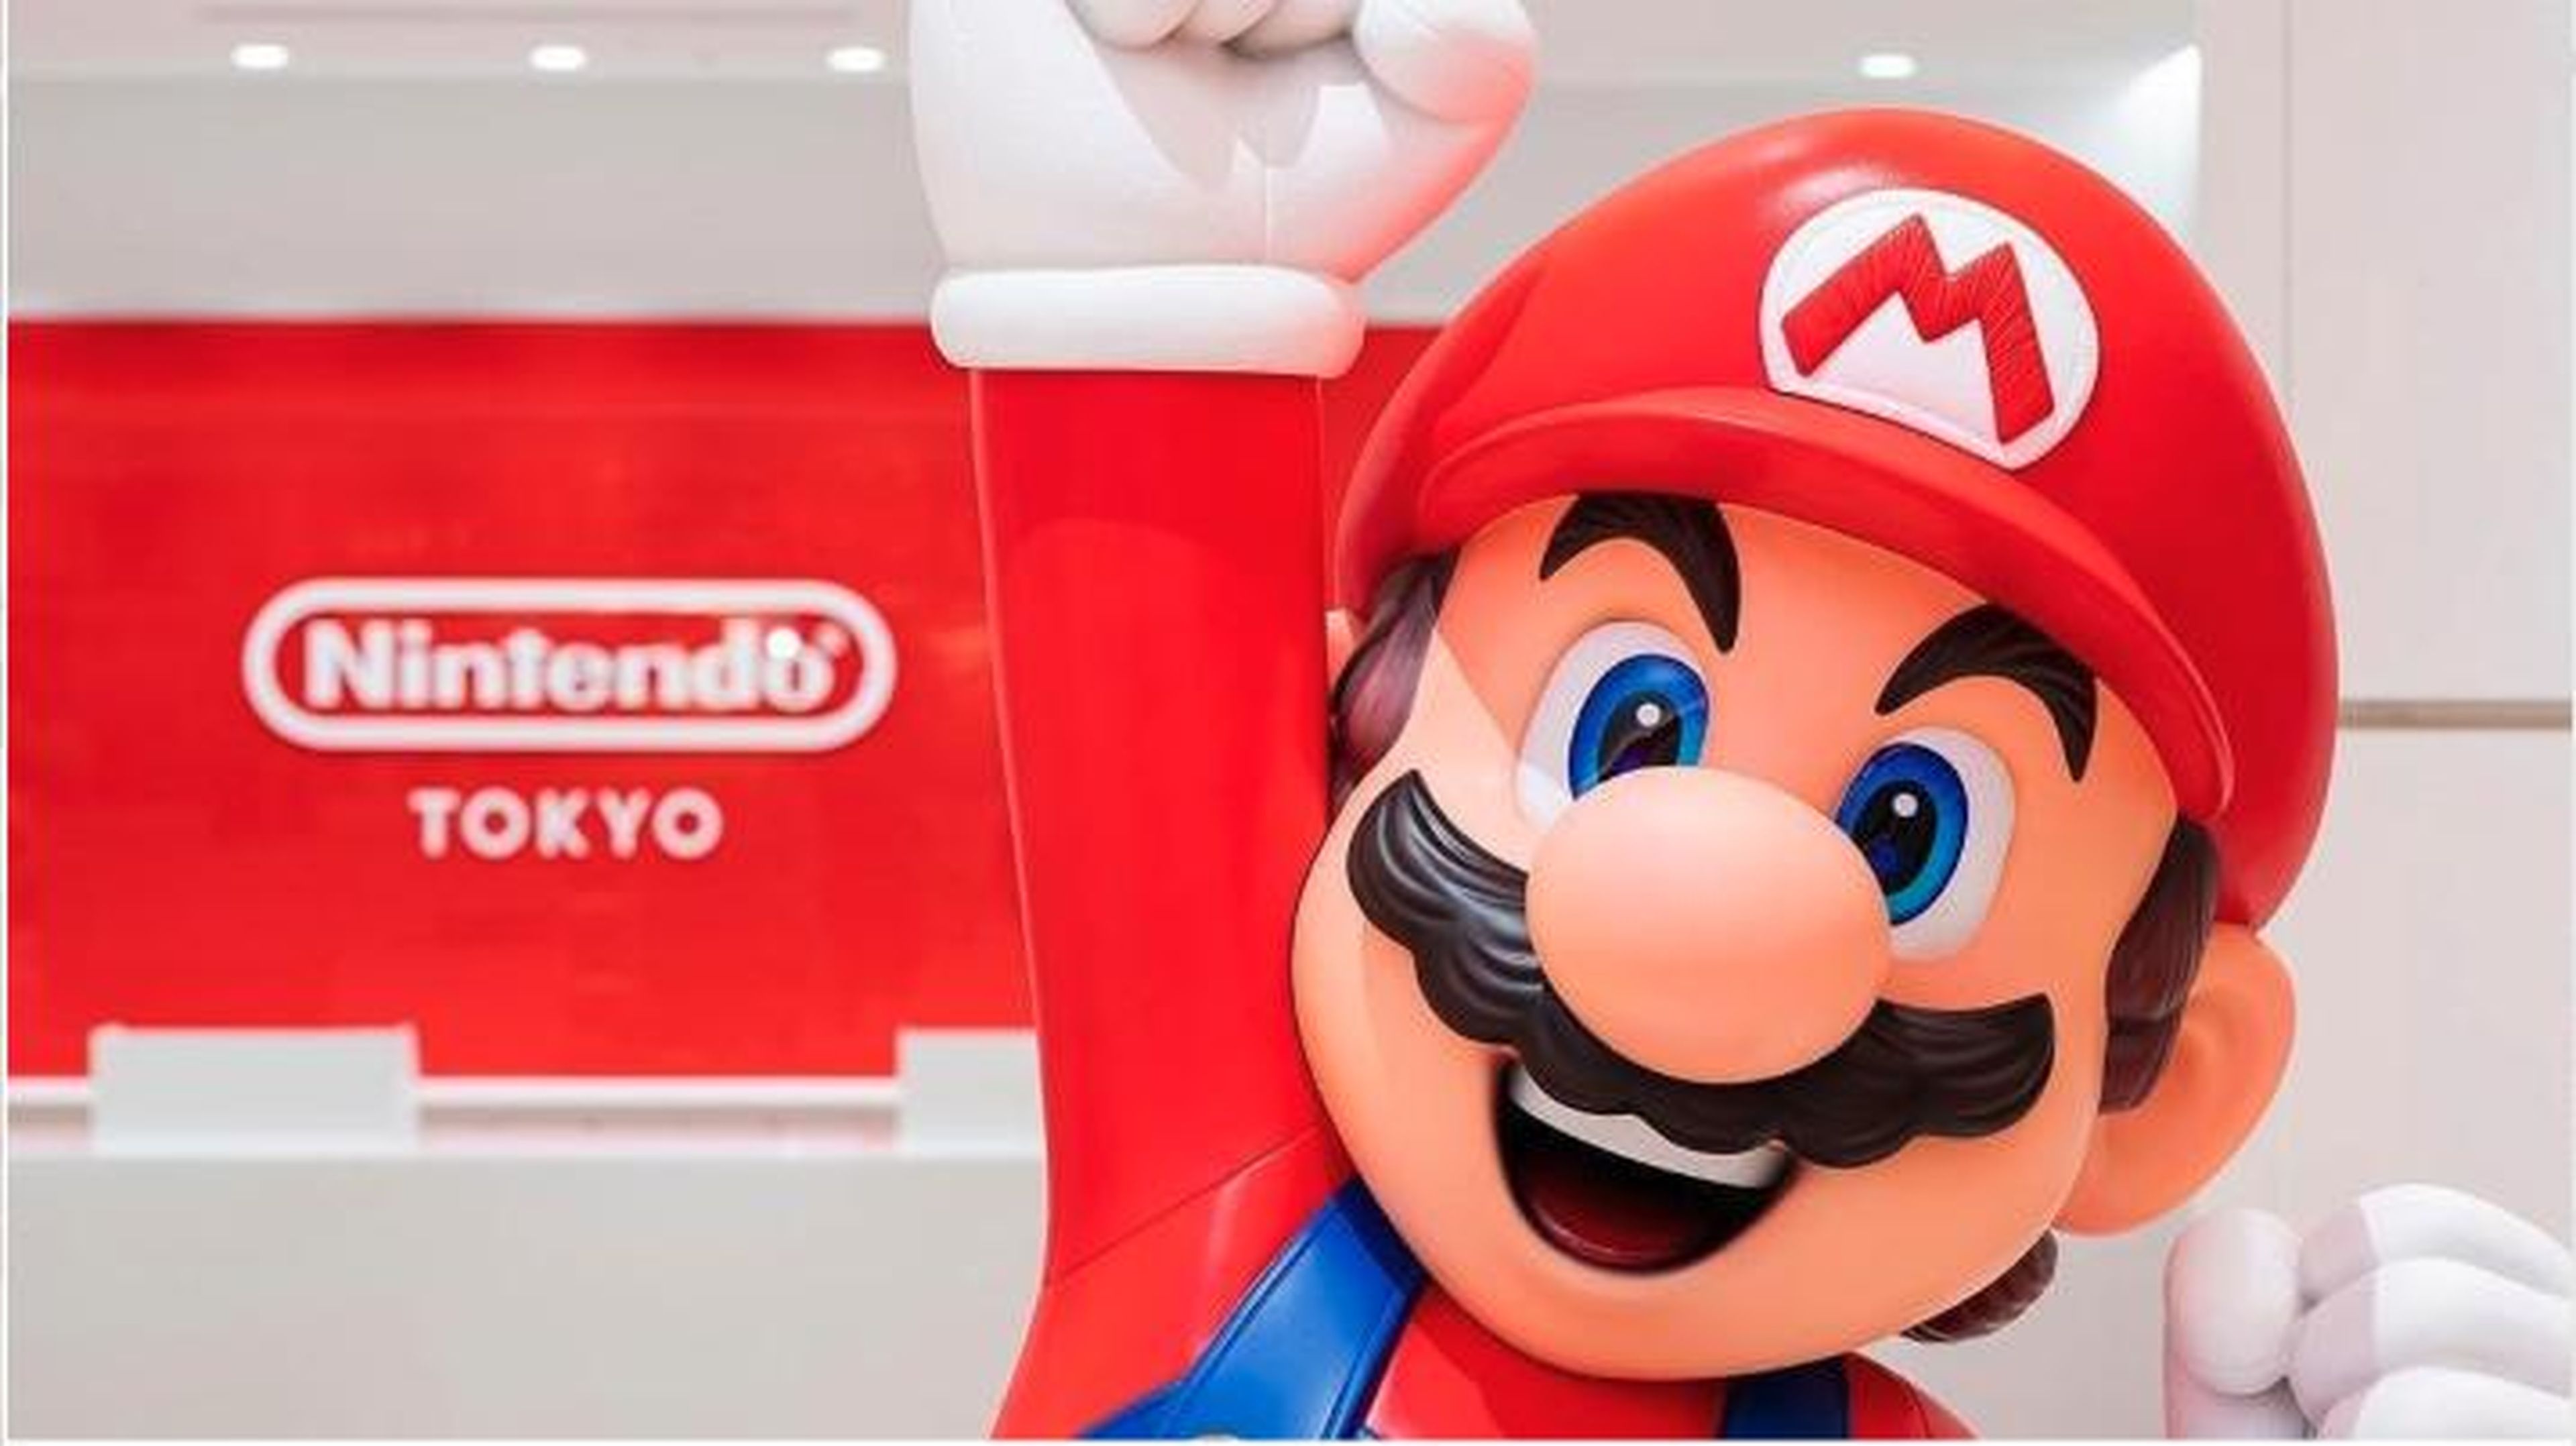 Super Mario da la bienvenida a los clientes a Nintendo Tokio.